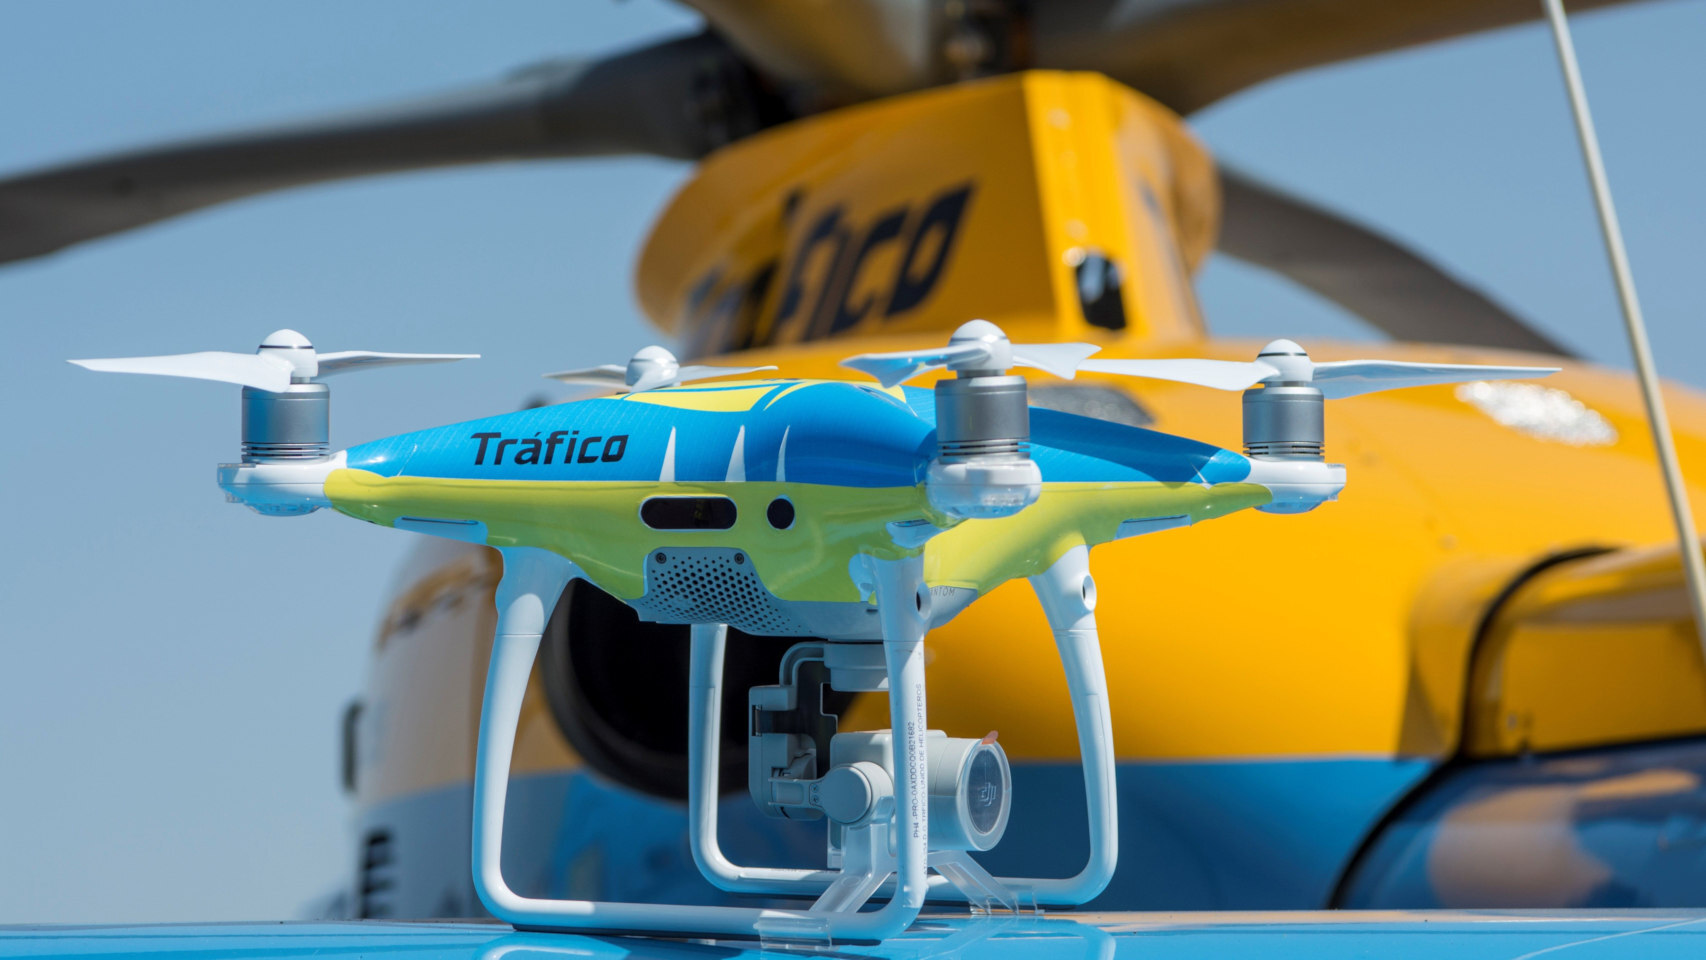 Oficial: los drones de la DGT ya están siendo usados para multar